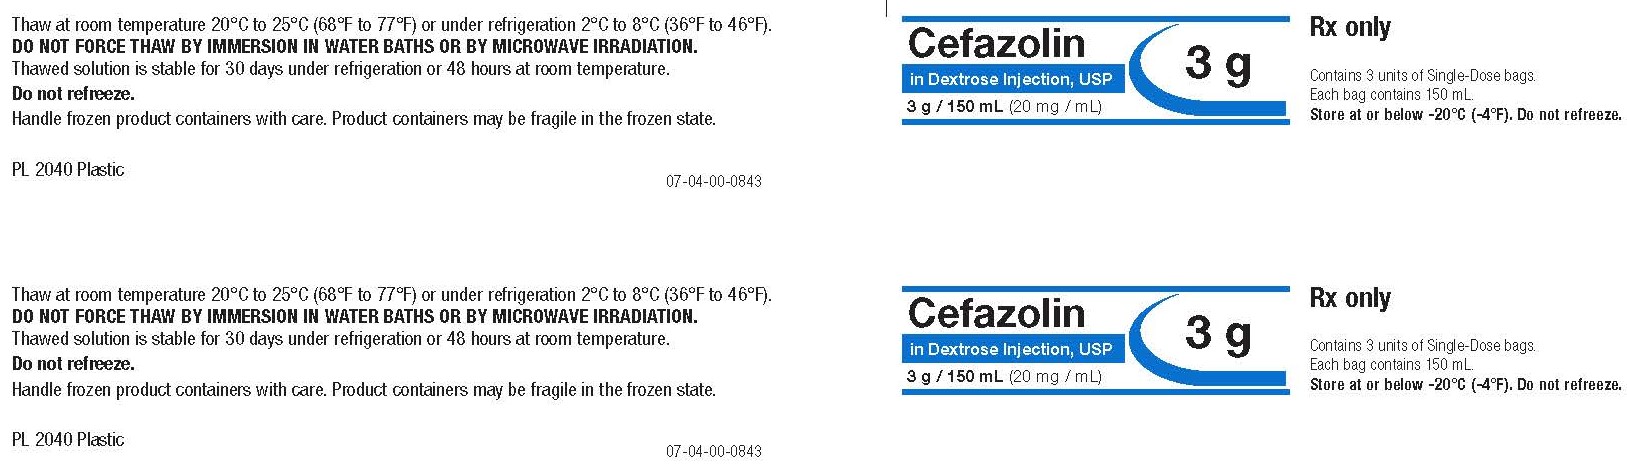 Representative Cefazolin Carton Label 0338-0096-06  1 of 2